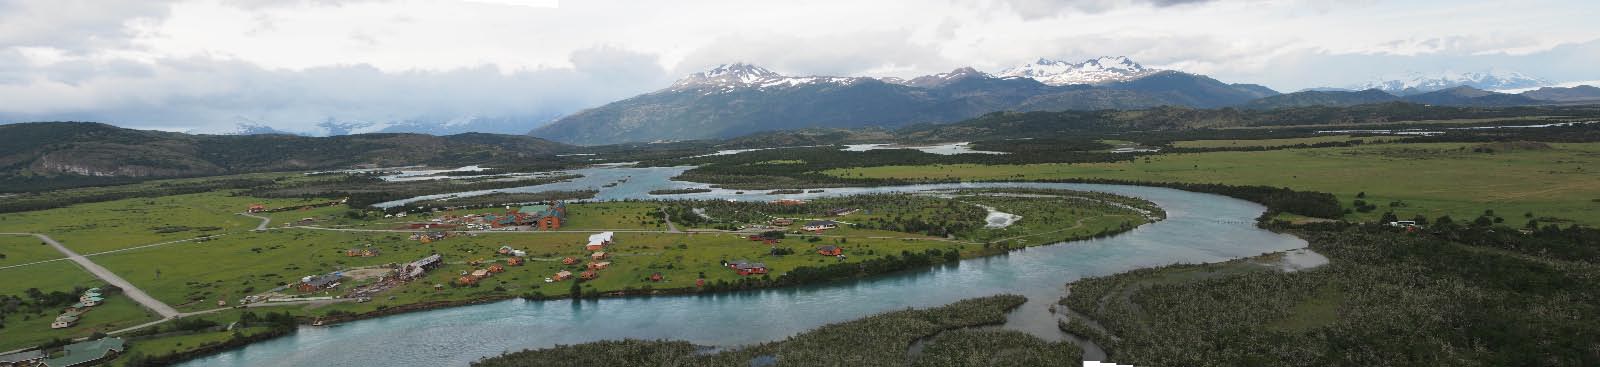 patagonie chilienne - Parc de Tores del Paine